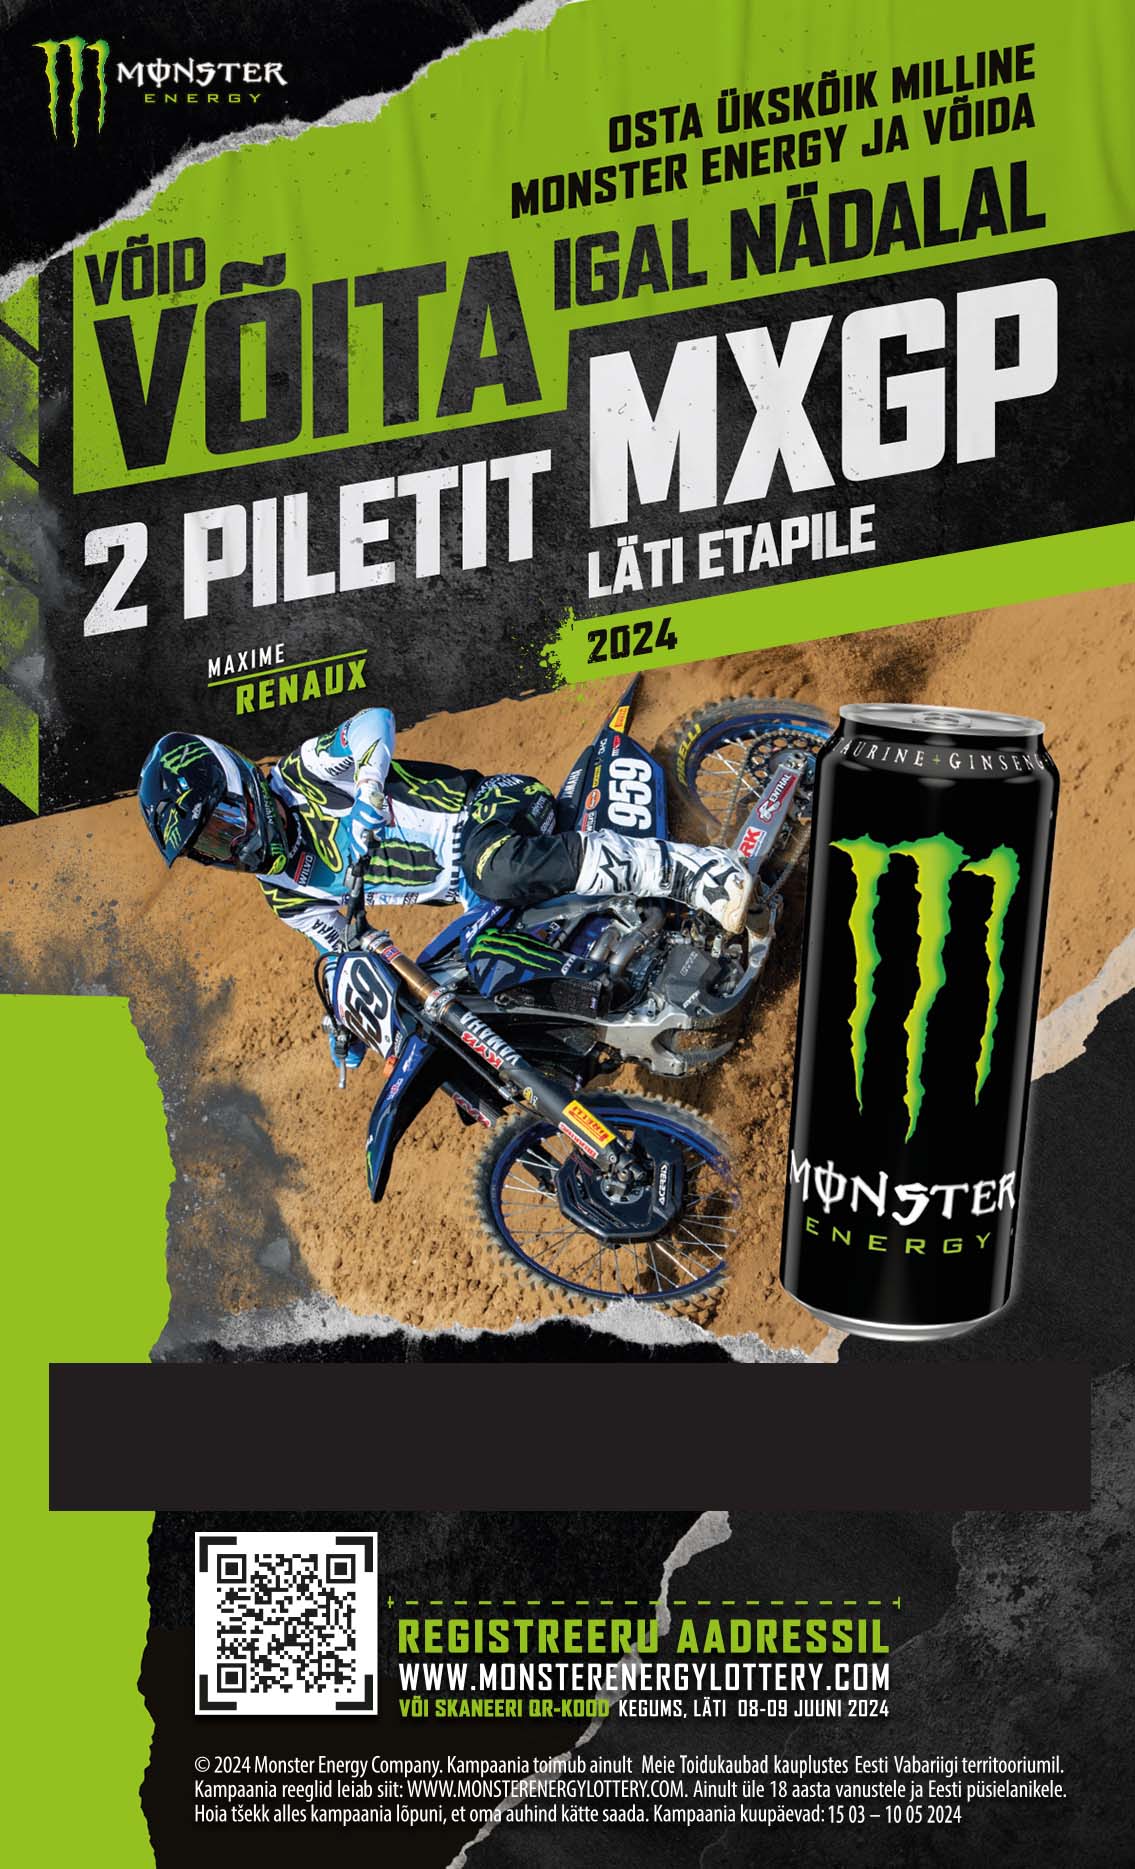 Võid osta ükskõik milline Monster Energy ja võida voita igal nädalal 2 piletit MXGP Läti etapile 2024!